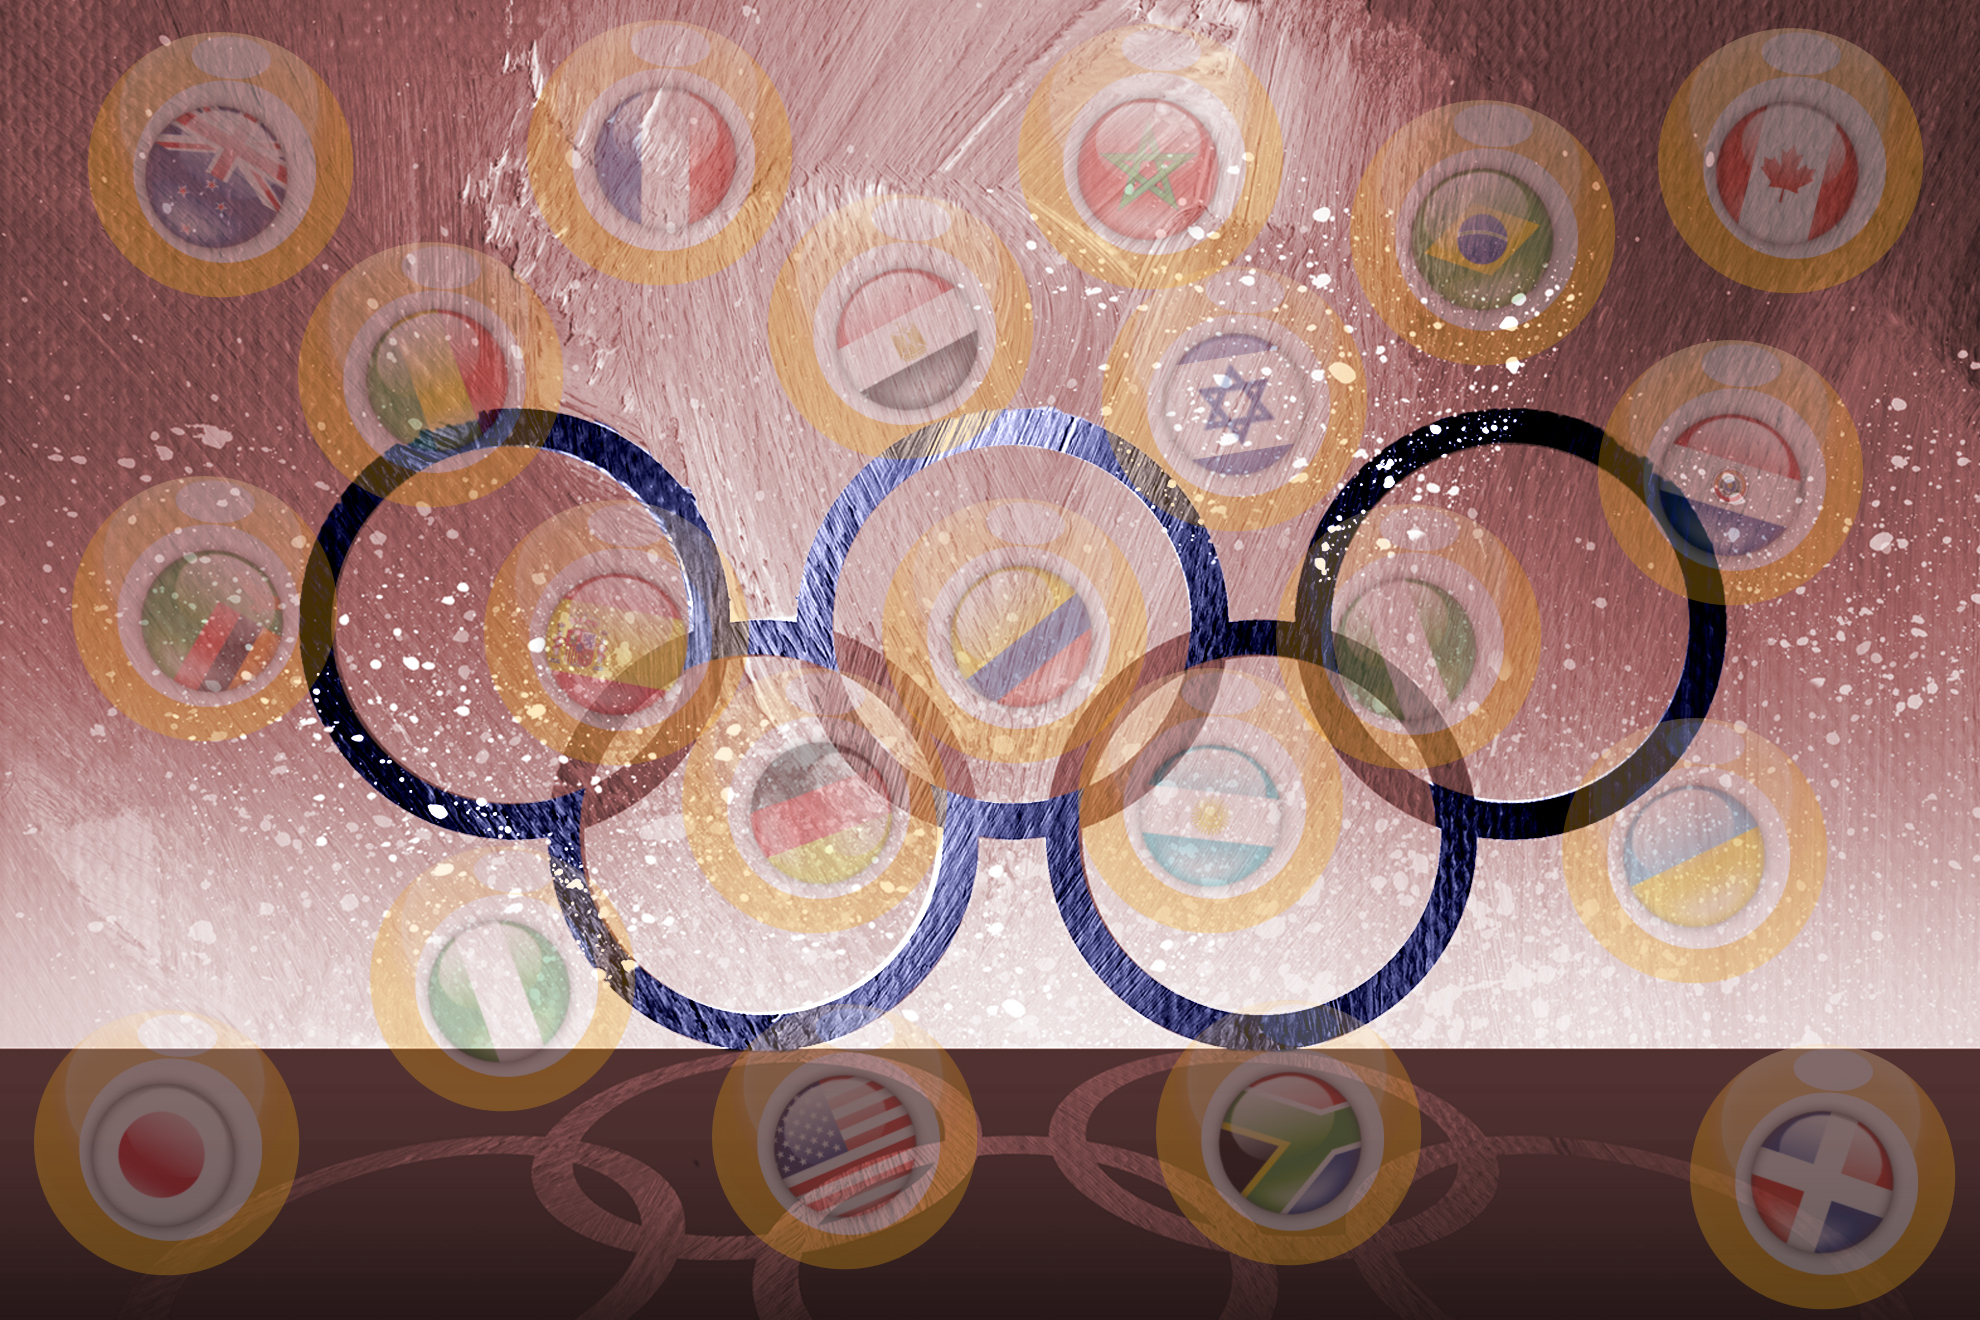 El f�tbol espa�ol en los Juegos Ol�mpicos de Par�s 2024: hablando en plata y so�ando en oro